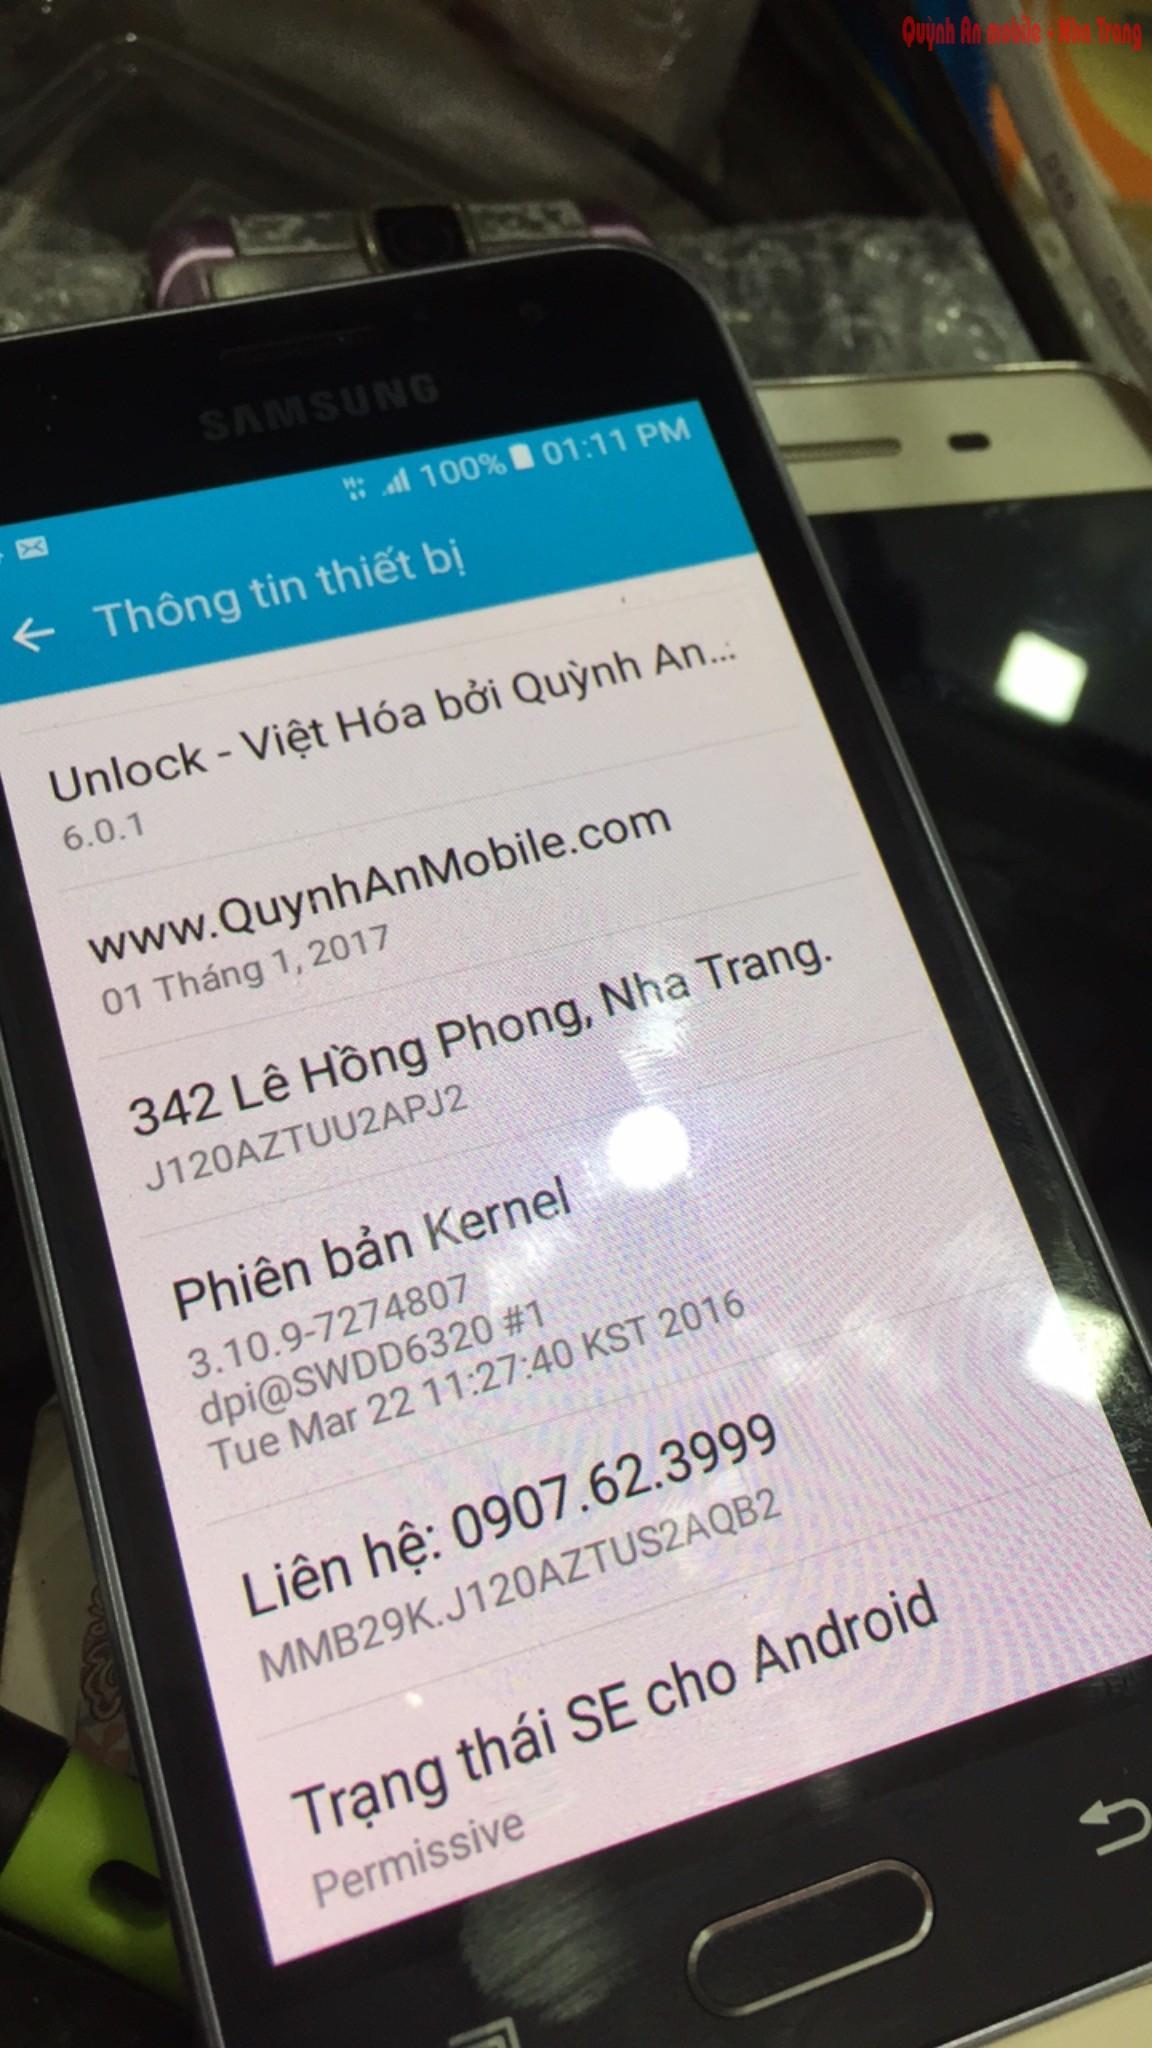 Mở mạng, nạp tiếng Việt Samsung SM-J120AZ Samsung Galaxy Amp 2 tại Nha Trang